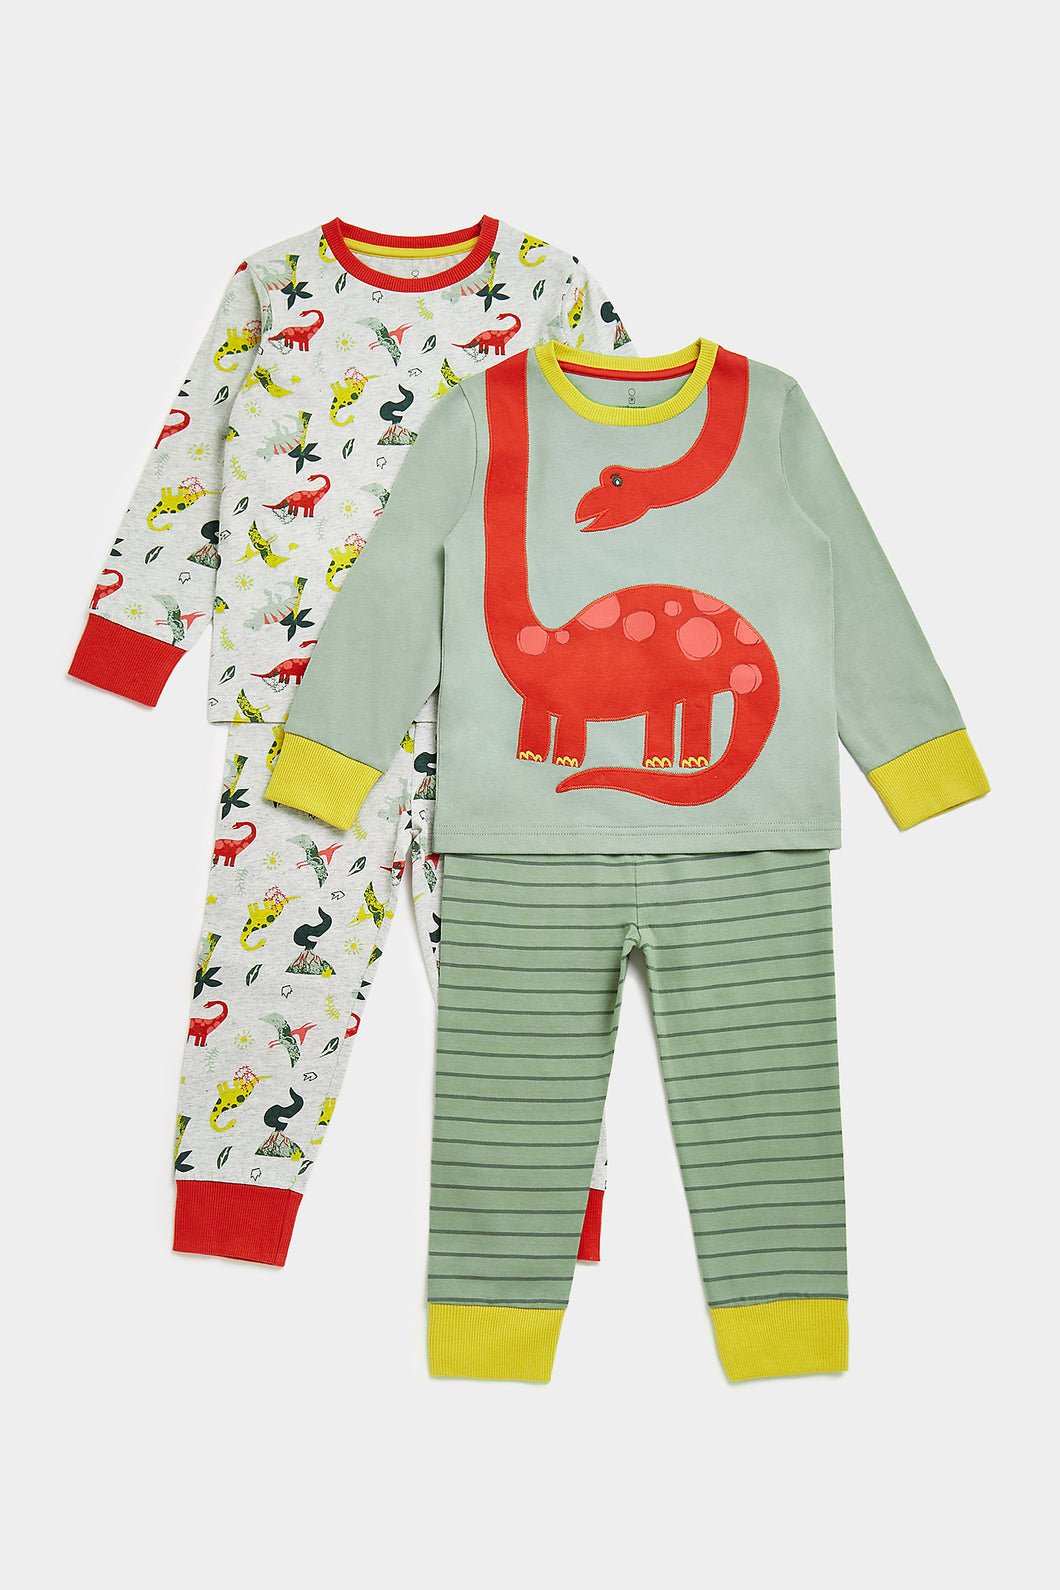 Mothercare Dinosaur Pyjamas -2 Pack